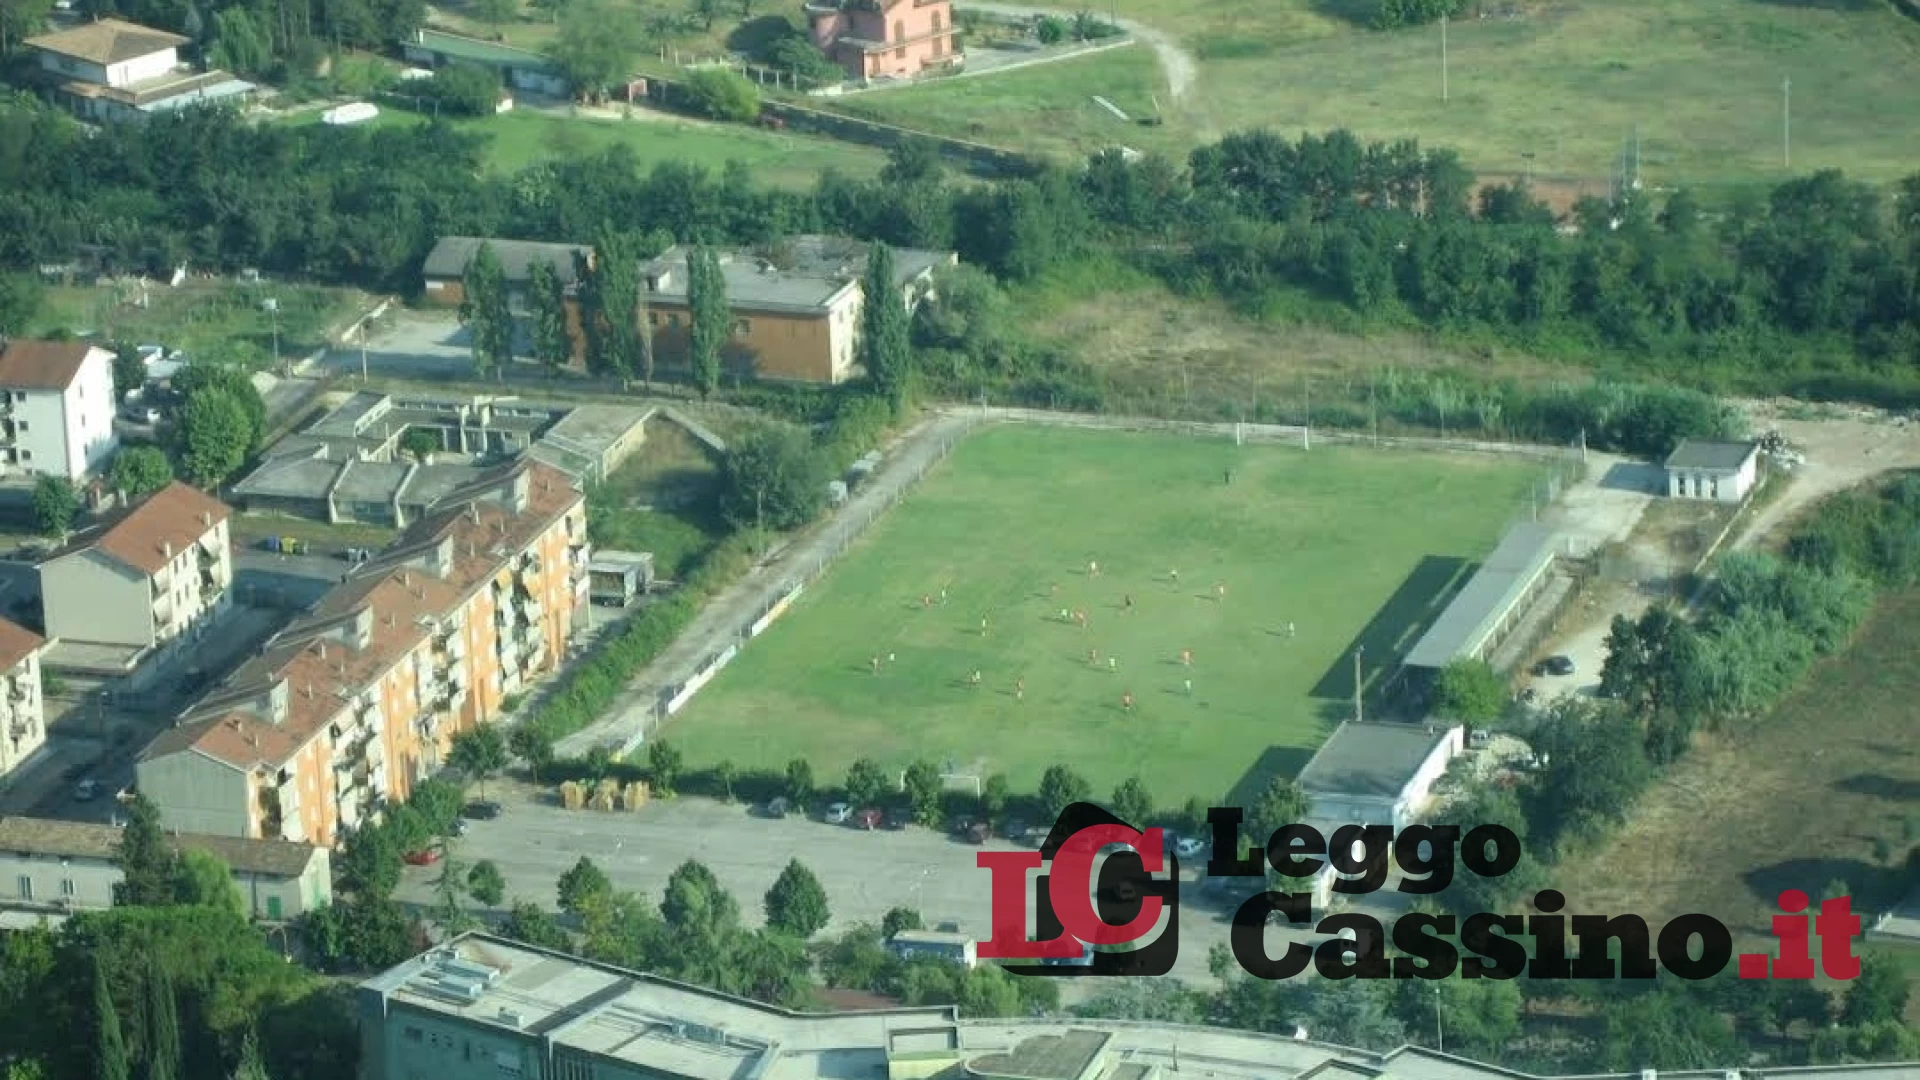 Campo al Colosseo e area fitness alla ciclabile: Cassino a tutto sport